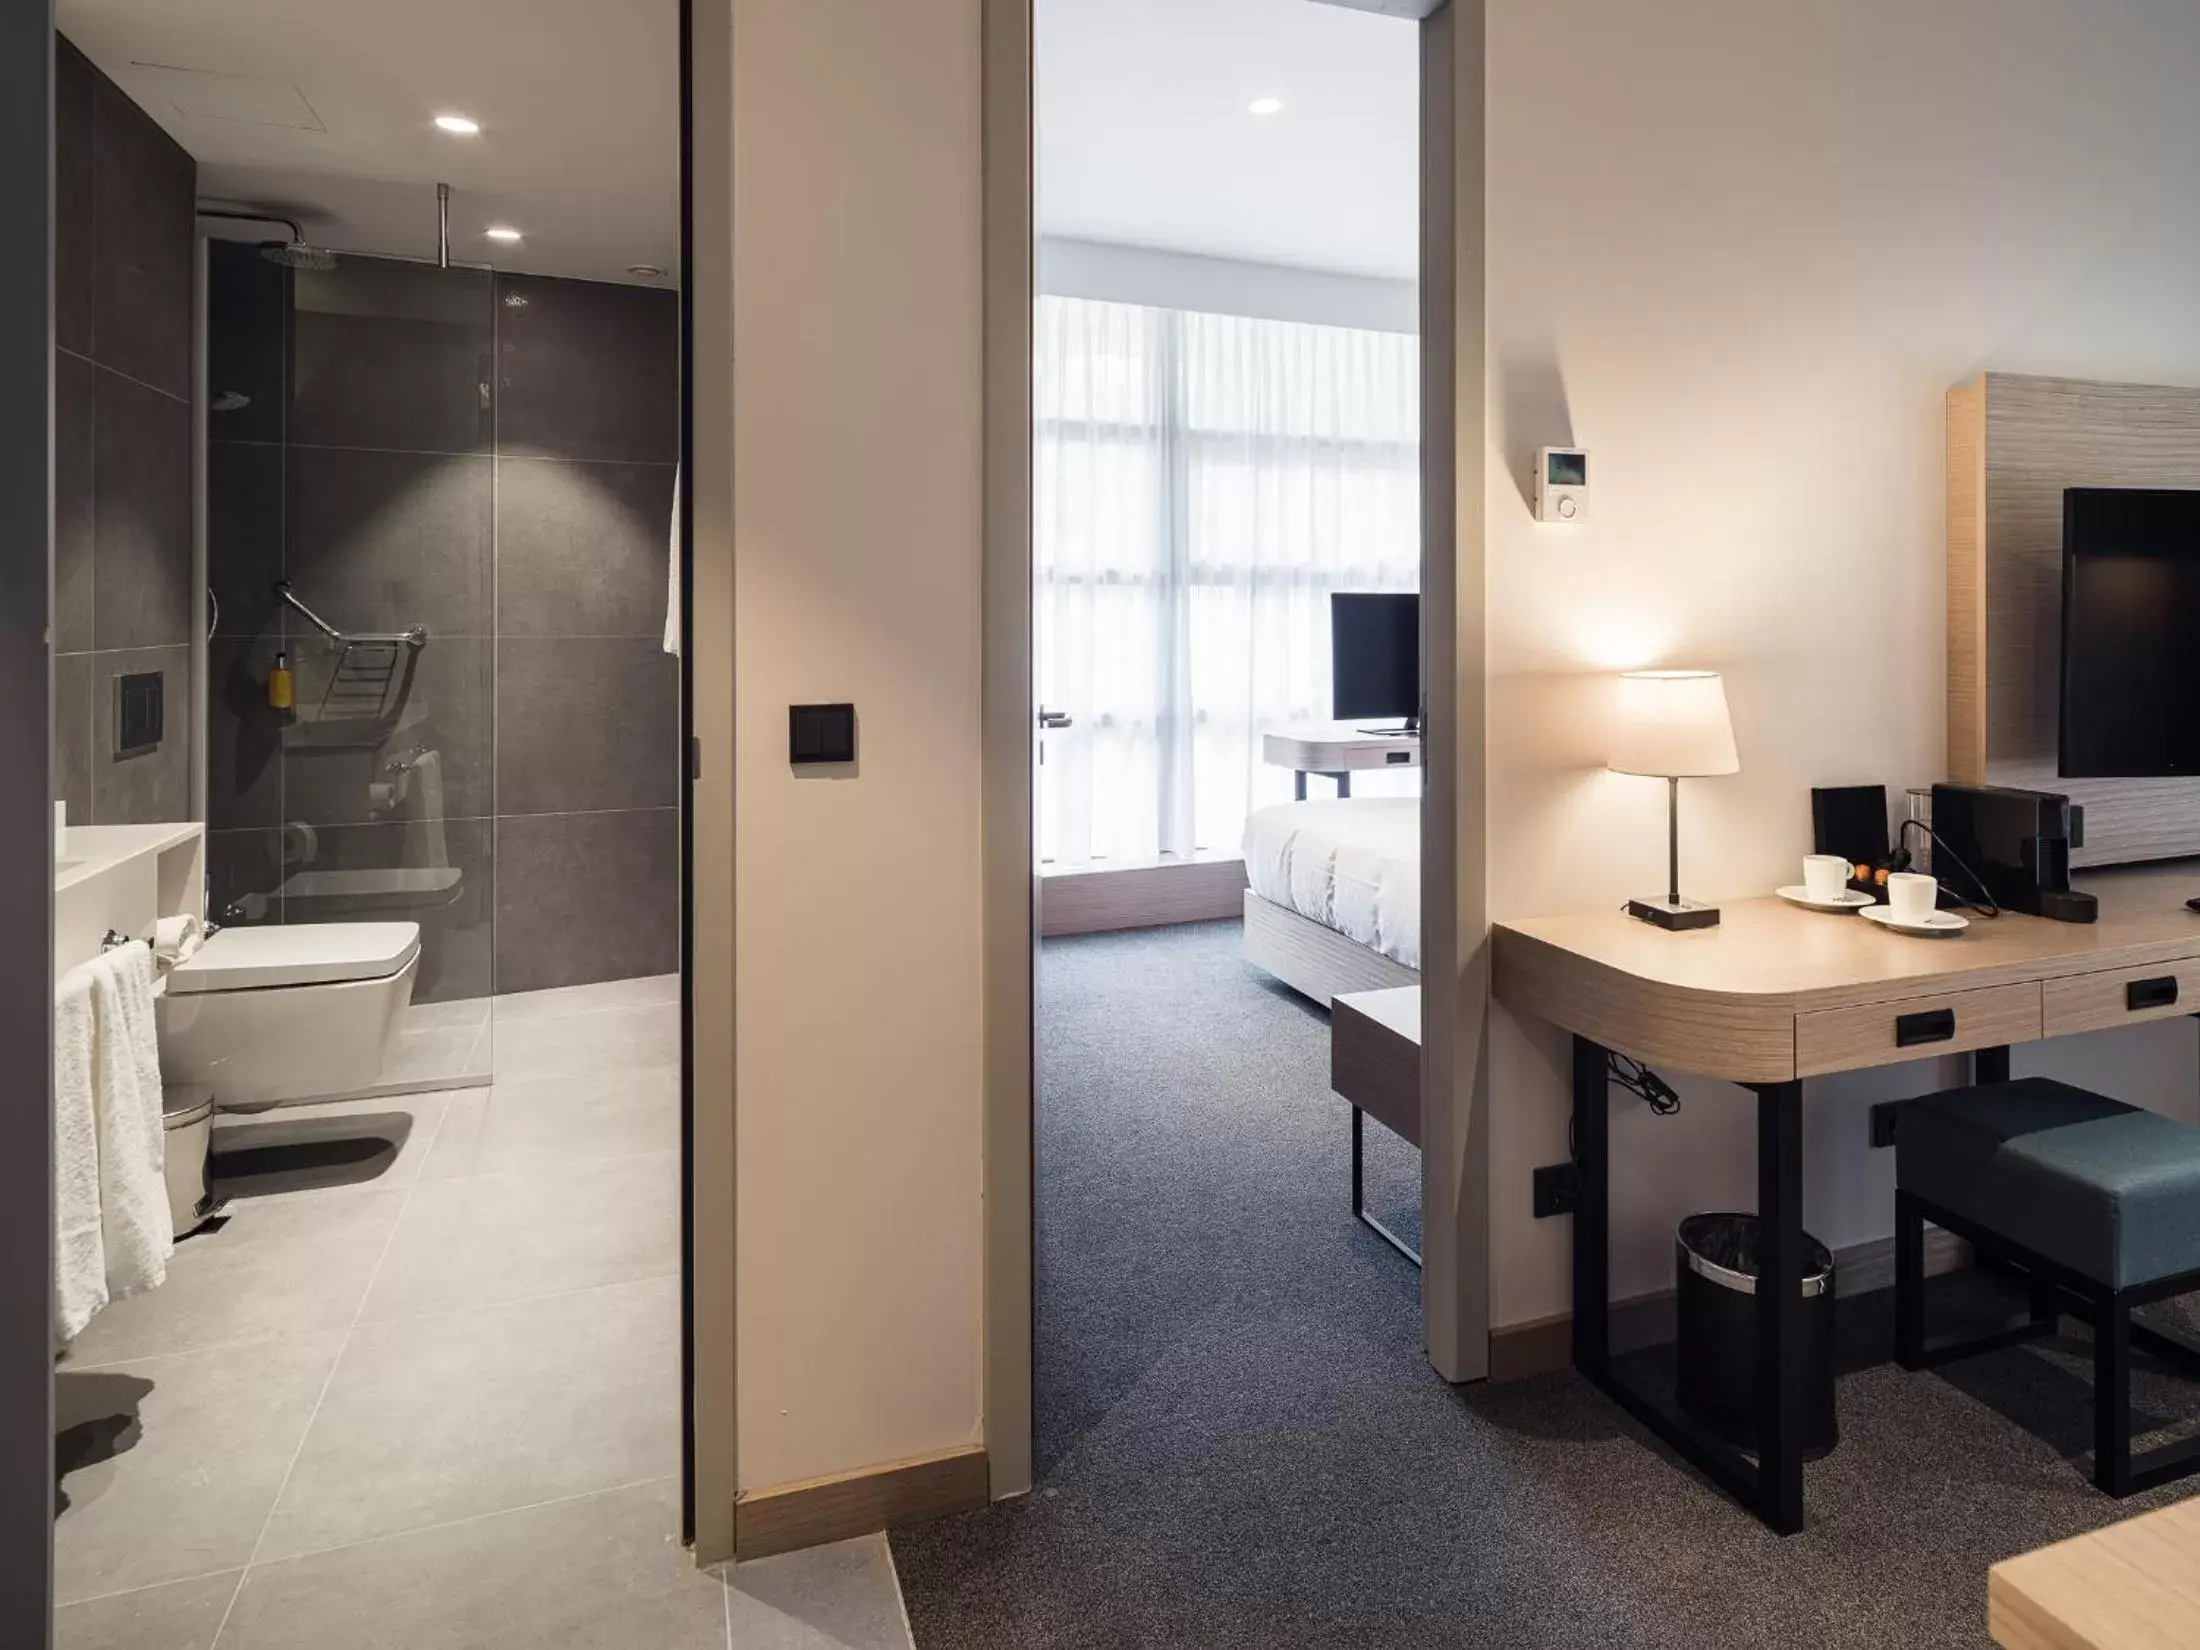 Bedroom, Bathroom in Executive Residency by Best Western Amsterdam Airport